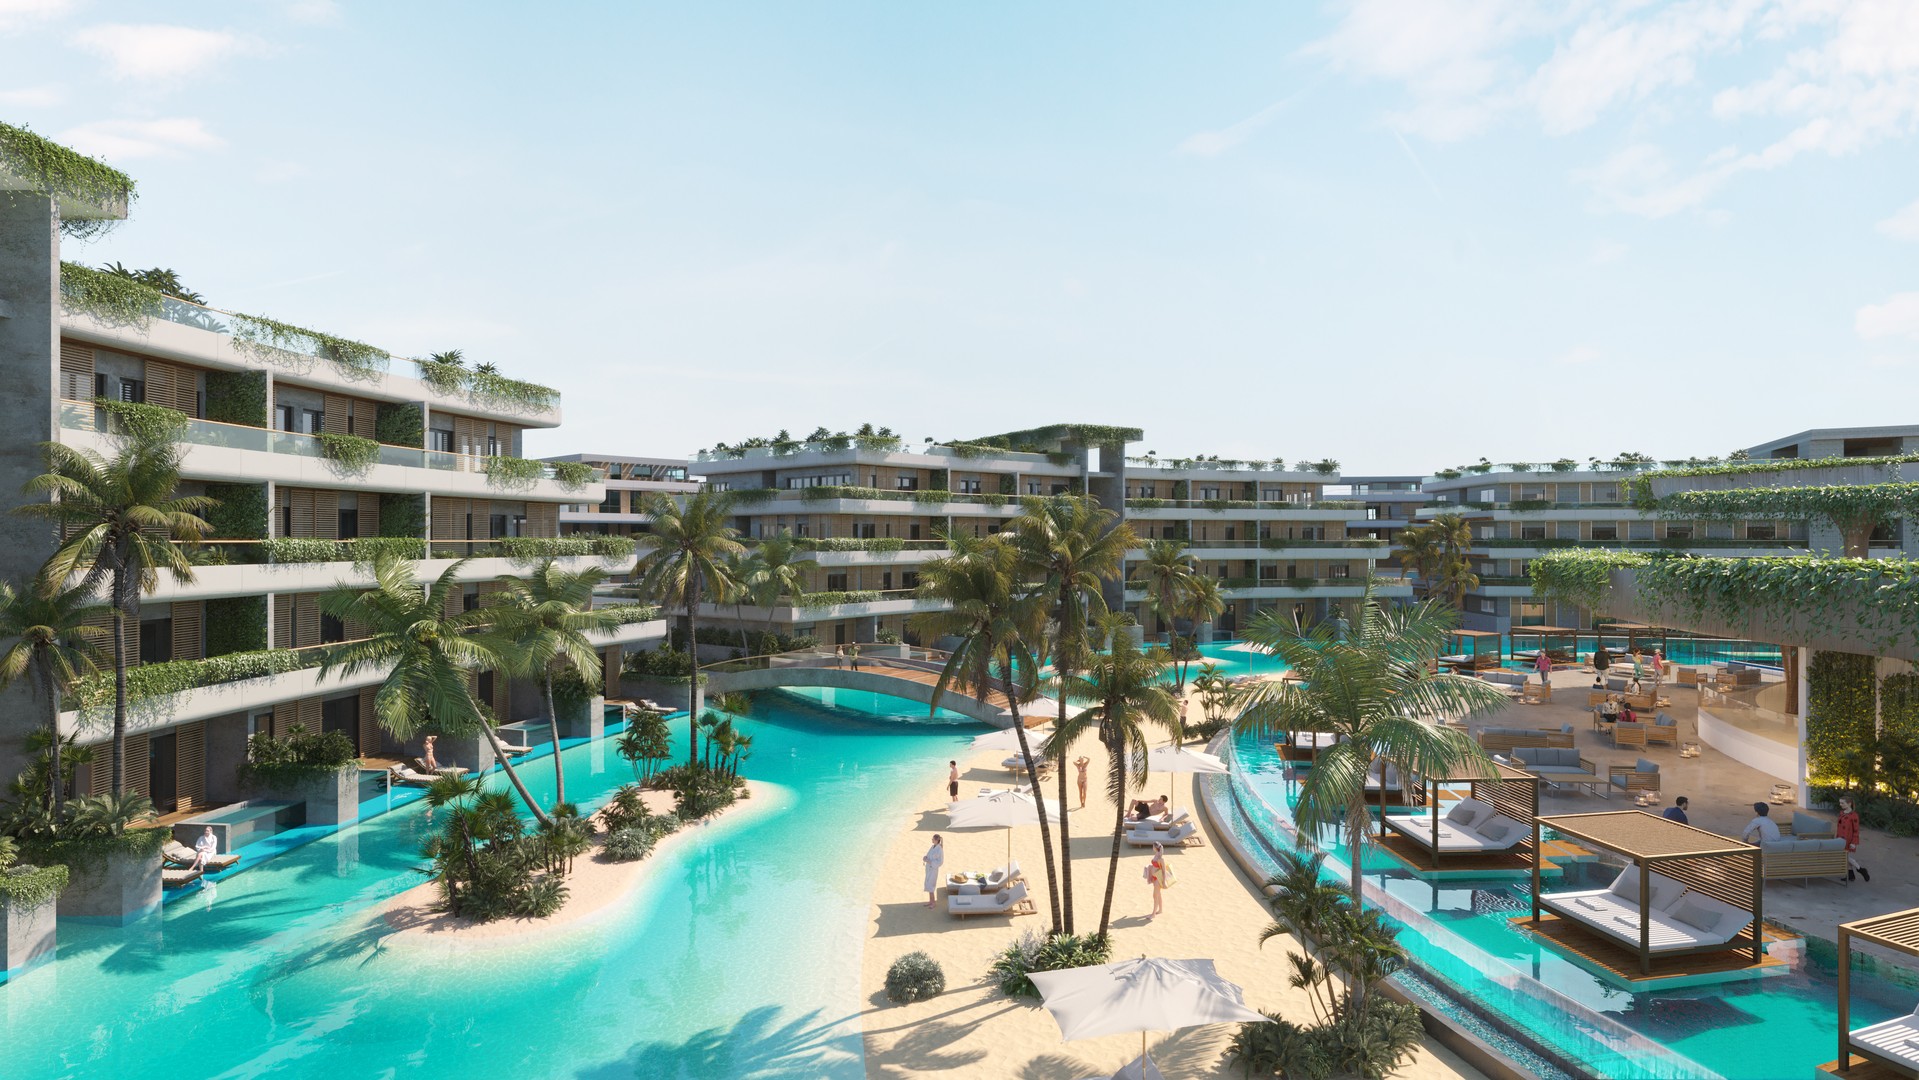 apartamentos - Apartamentos de lujo de venta en Punta Cana, a 3 minutos de la playa. 1,2,3 hab. 4